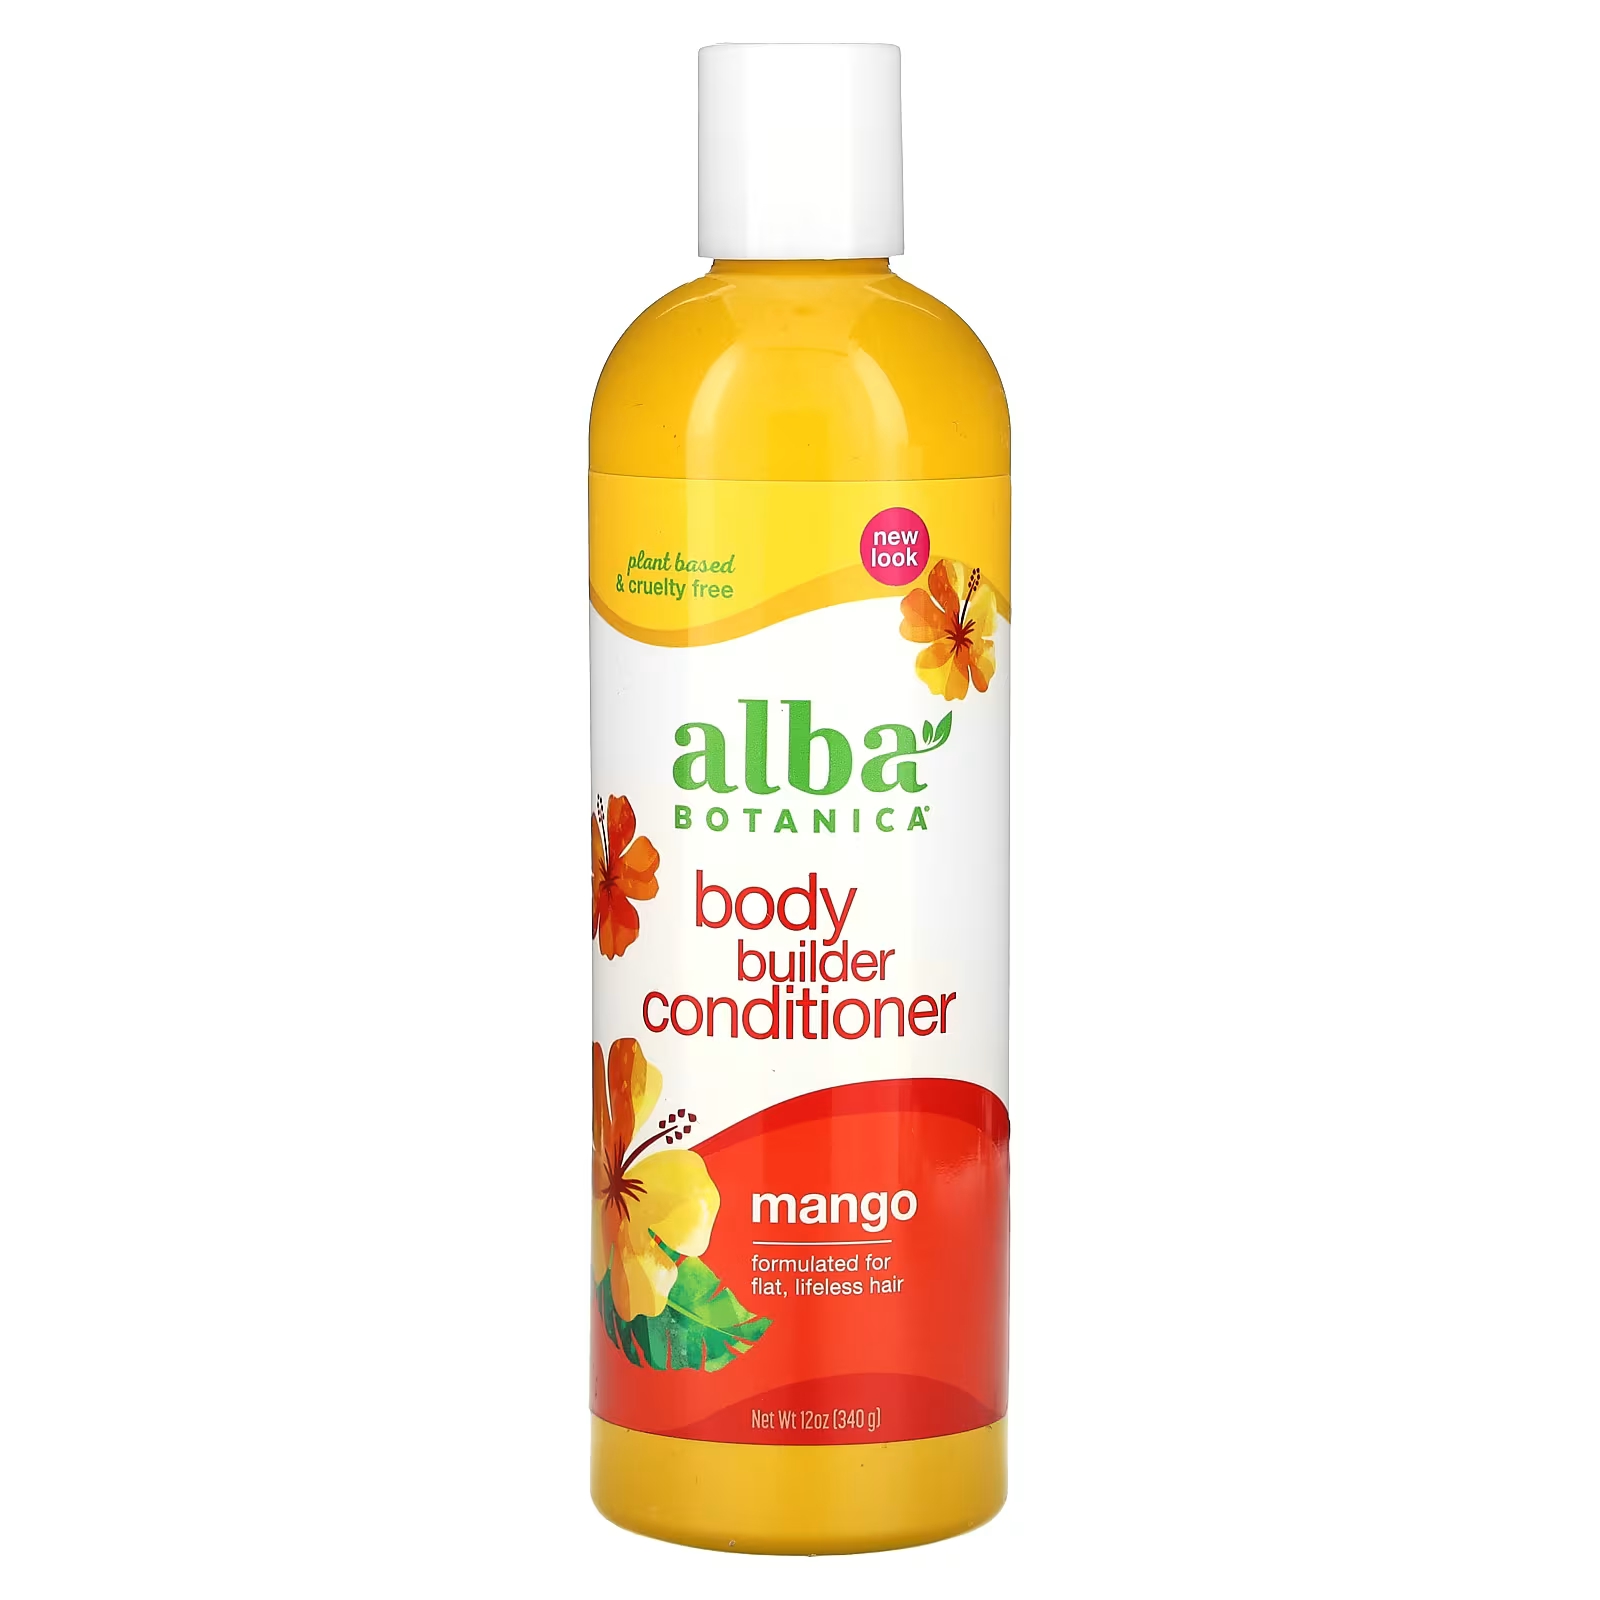 Кондиционер для волос Alba Botanica Body Builder с манго, 340 г гавайский кондиционер для волос 340 г alba botanica